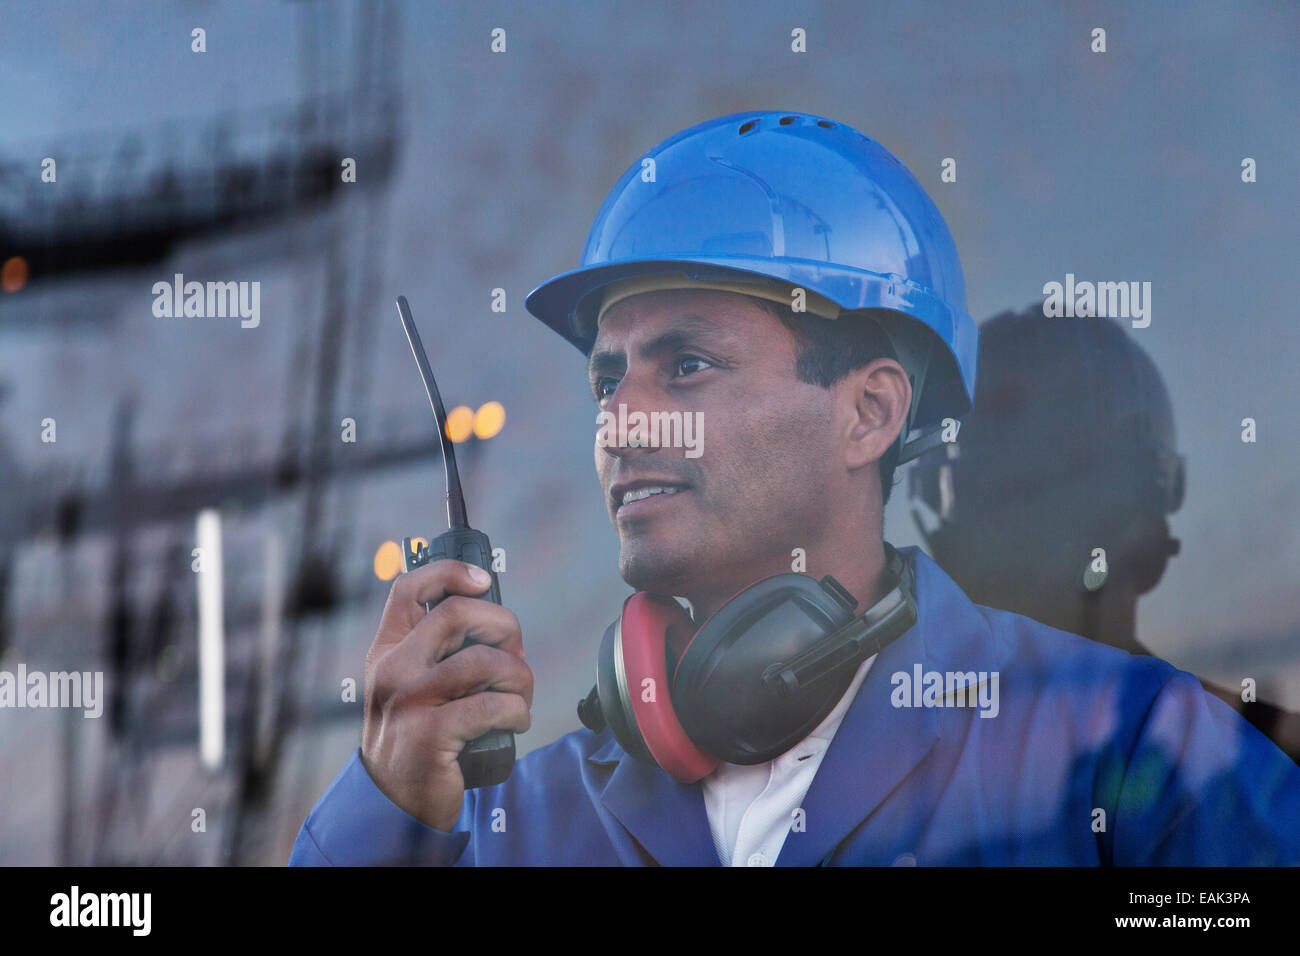 Worker holding fenêtre près de talkie-walkie Banque D'Images